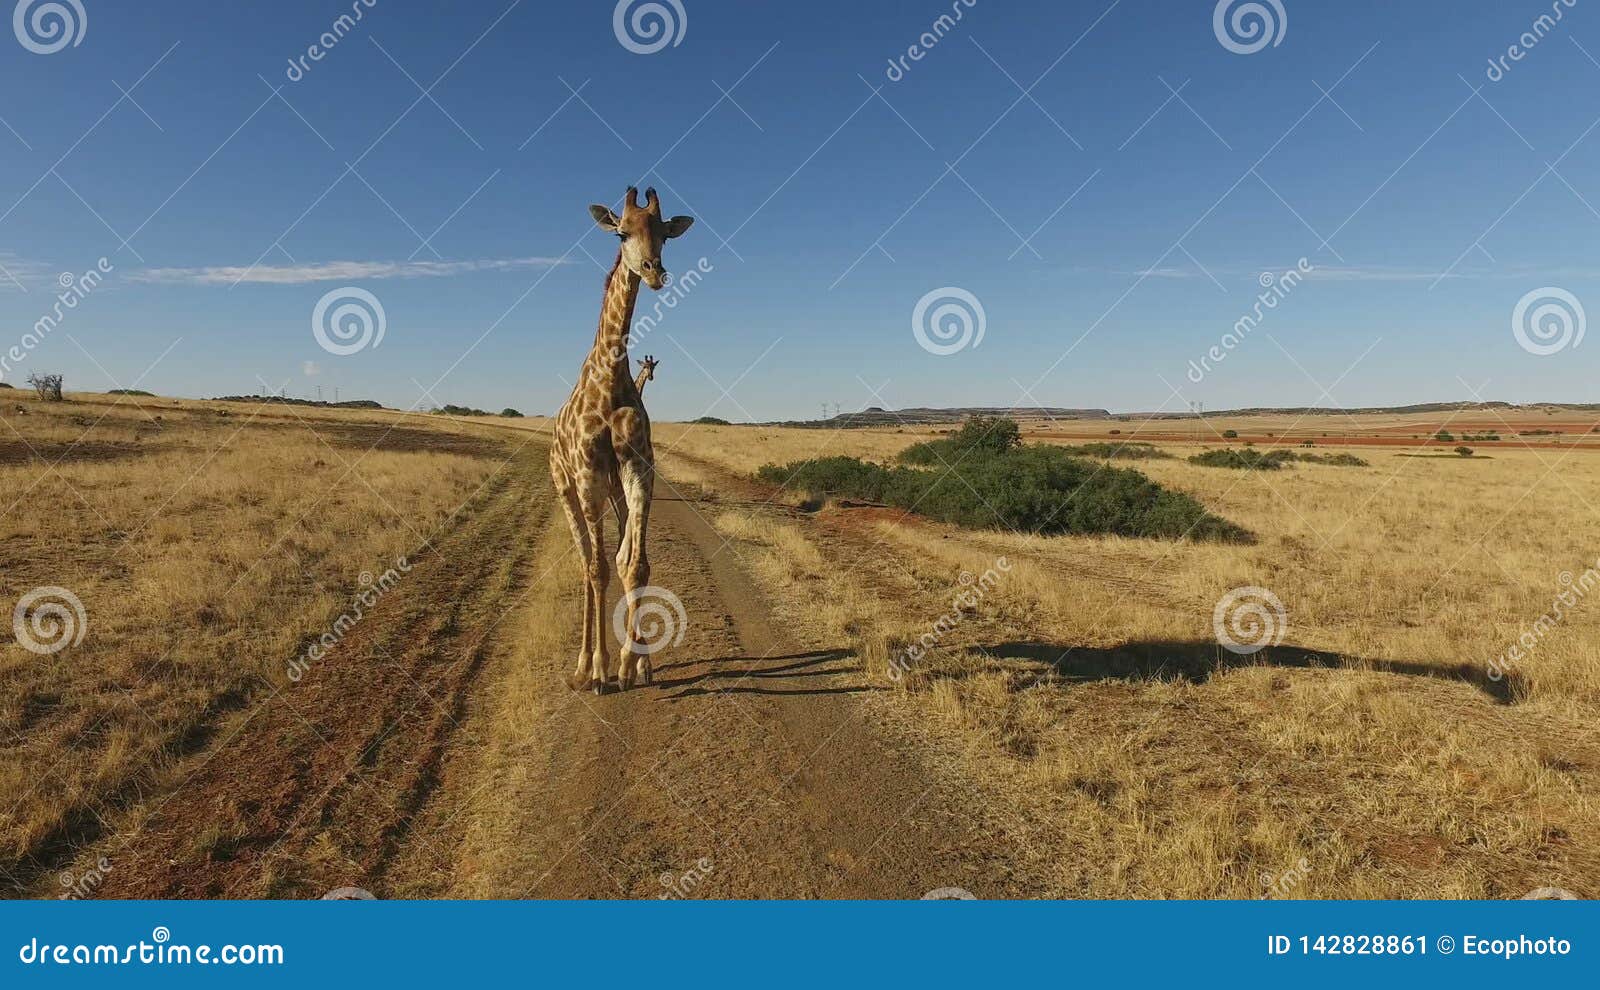 Qual o resultado do cruzamento da girafa com o carro? - Charada e